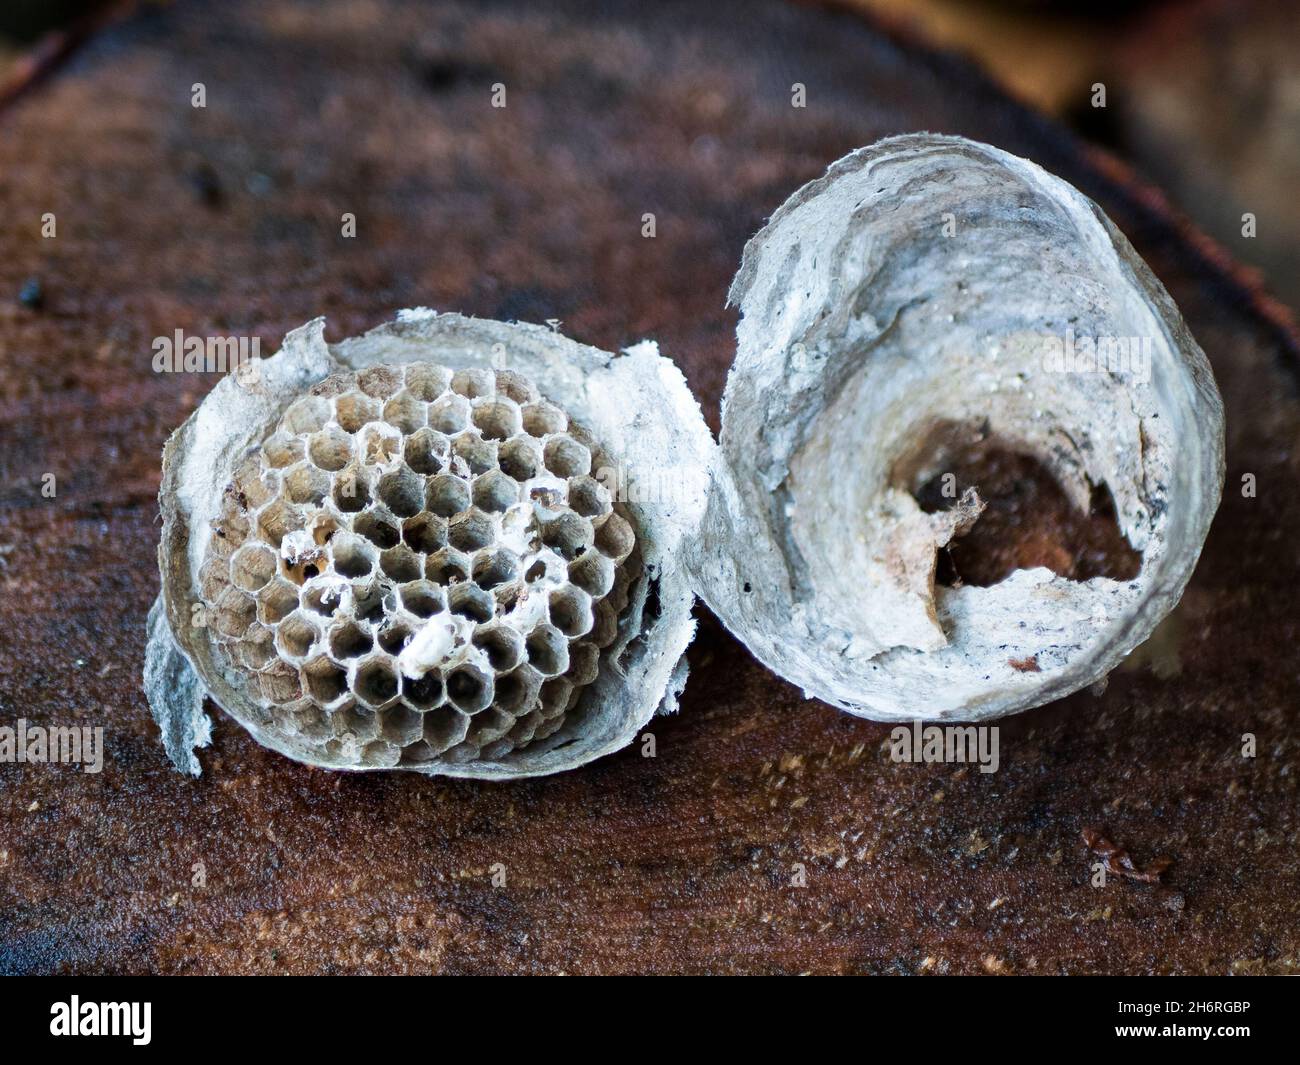 Zerstörtes Papiernest, das von Wespen verlassen wurde. Lebensraum für Insekten. Hornet's Nest, Nahaufnahme Stockfoto